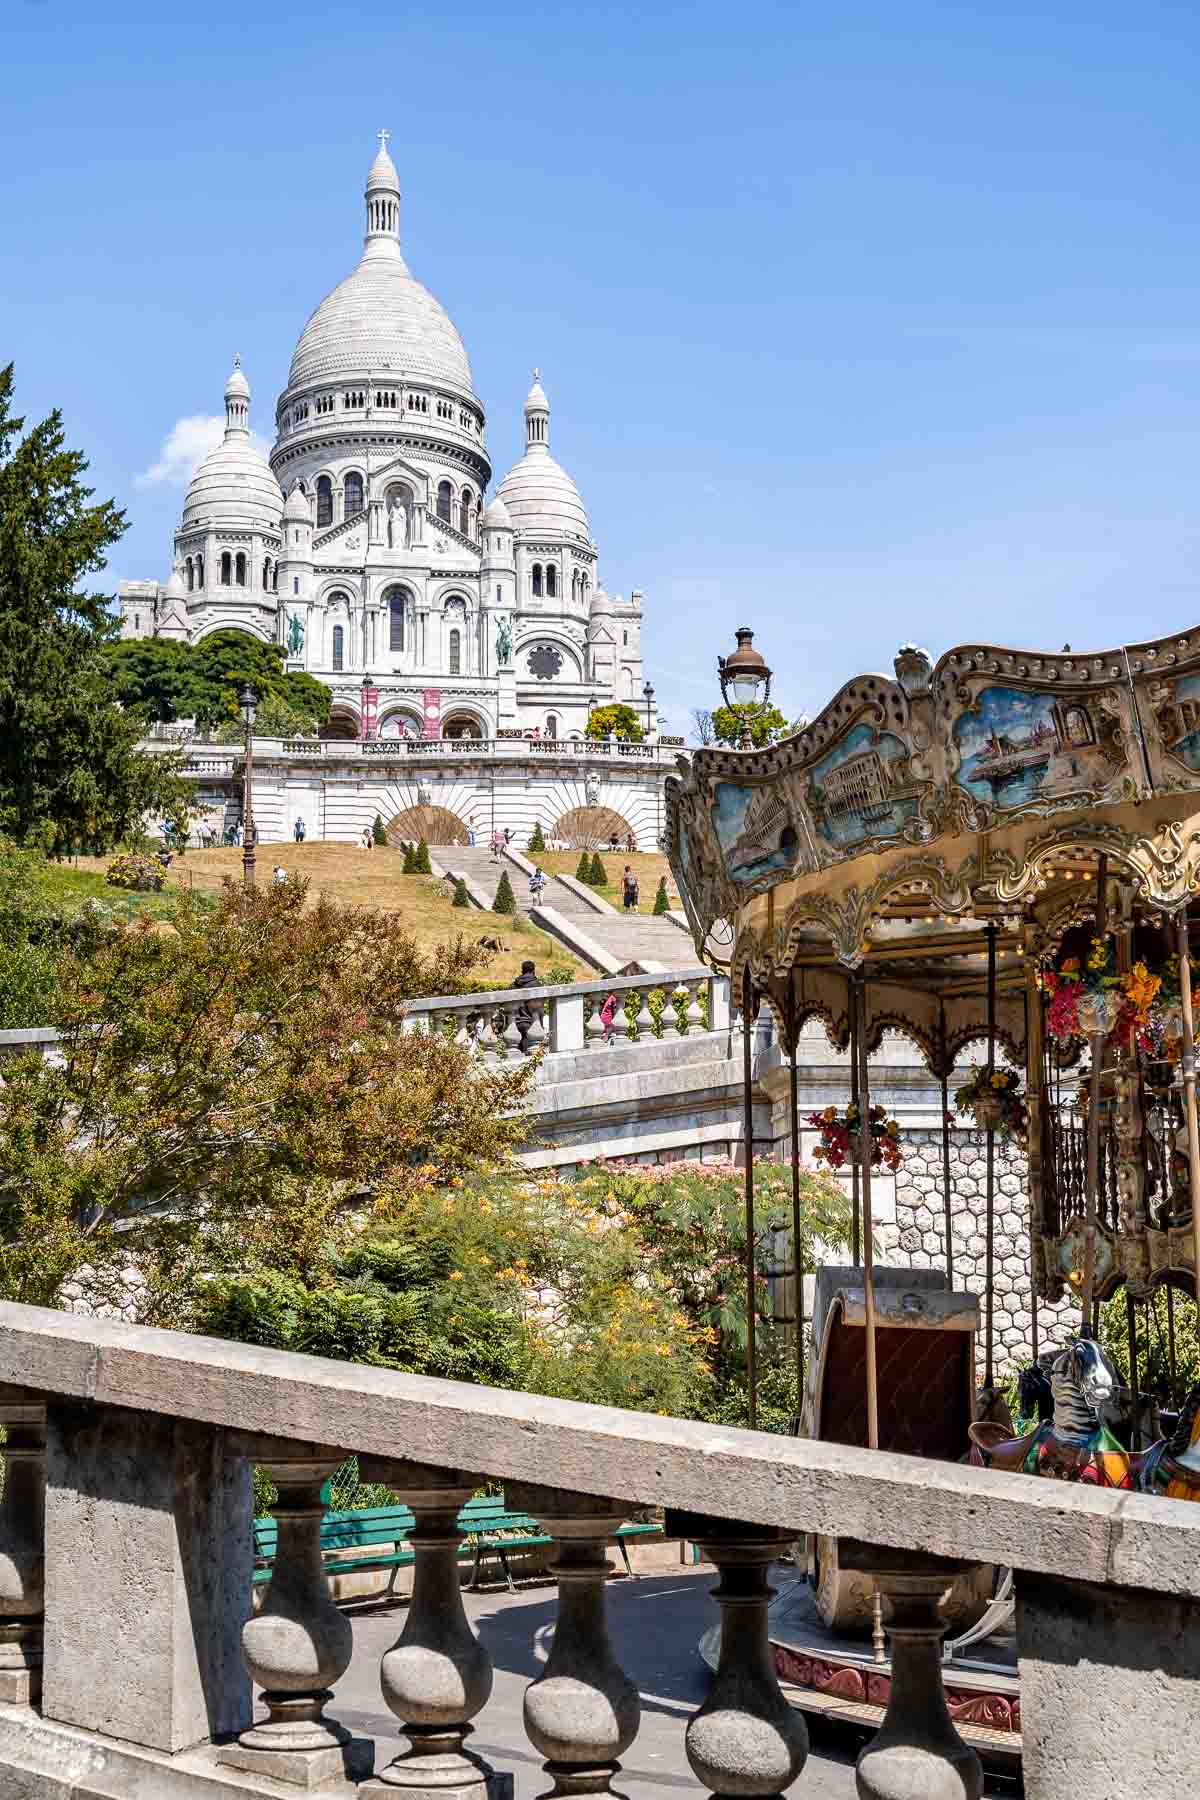 Carrousel de Saint-Pierre in Montmartre, Paris